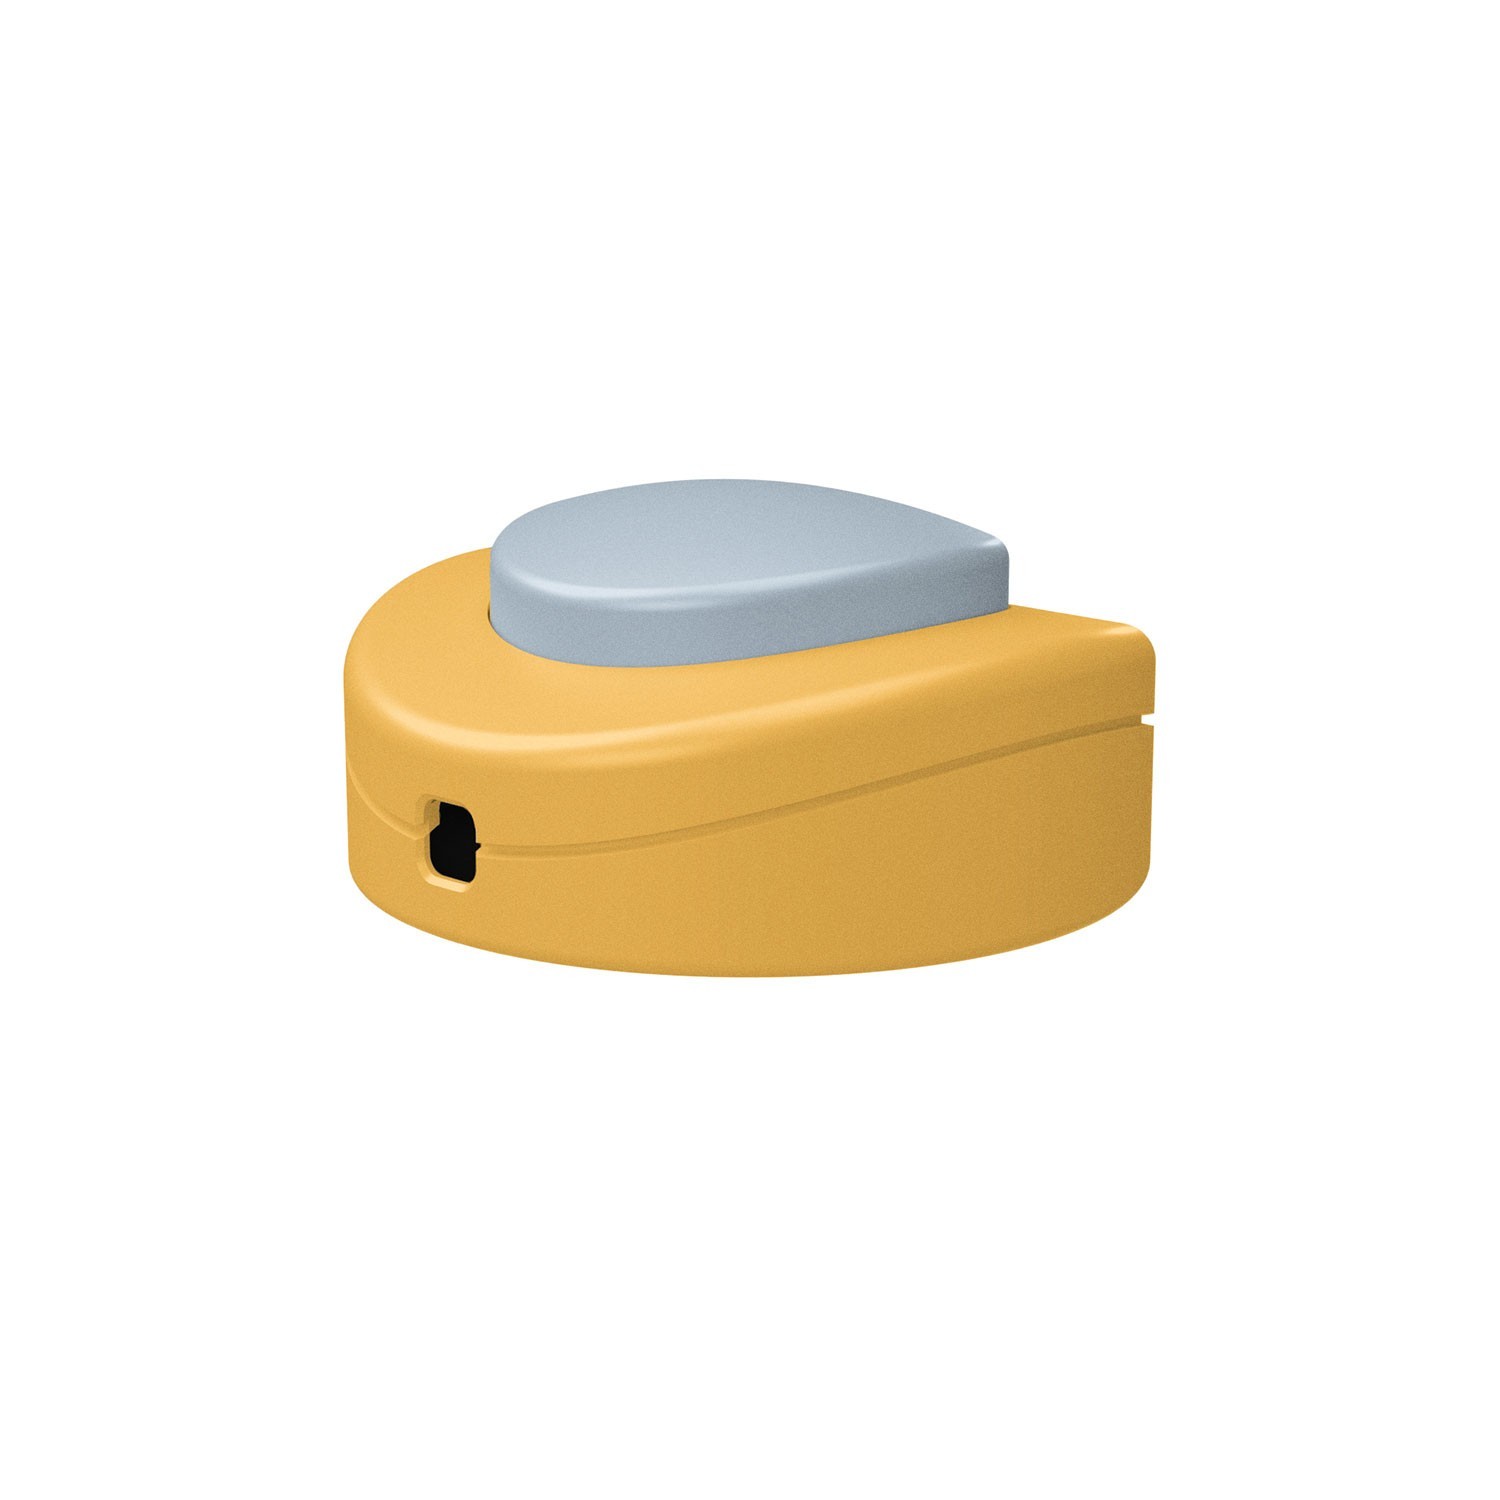 Prolazni jednopolni nožni prekidač Creative Switch žuti senf